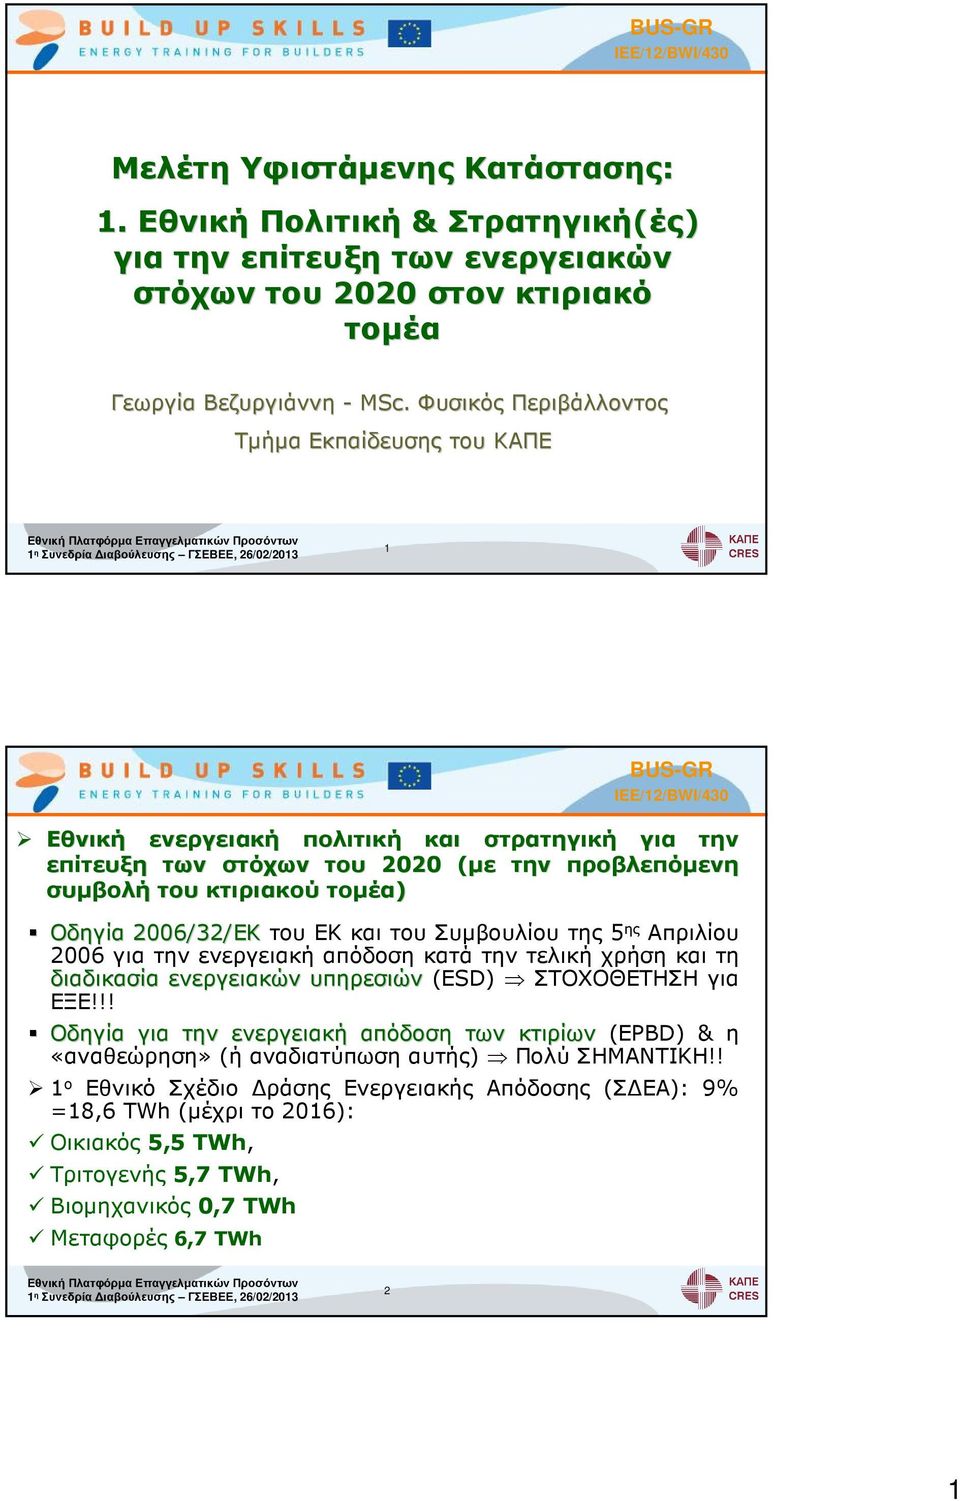 στόχων του 2020 (µε( την προβλεπόµενη συµβολή του κτιριακού τοµέα) Οδηγία 2006/32/ΕΚ του ΕΚ και του Συµβουλίου της 5 ης Απριλίου 2006 για την ενεργειακή απόδοση κατά την τελική χρήση και τη